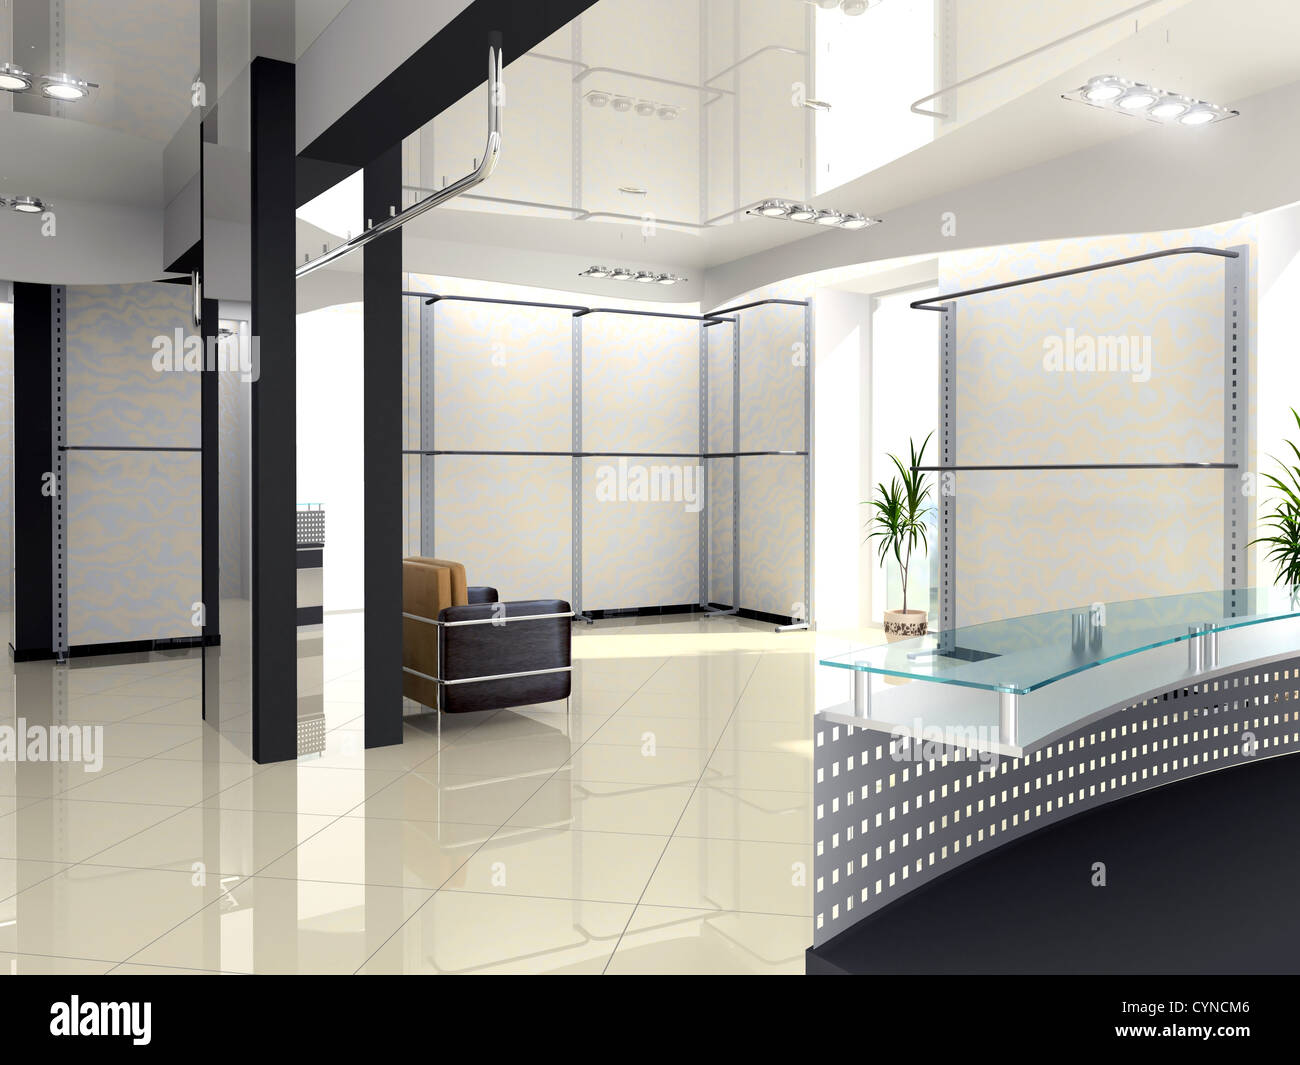 Modernes Geschäft Interior Design (Computer-generierte Bild) Stockfoto